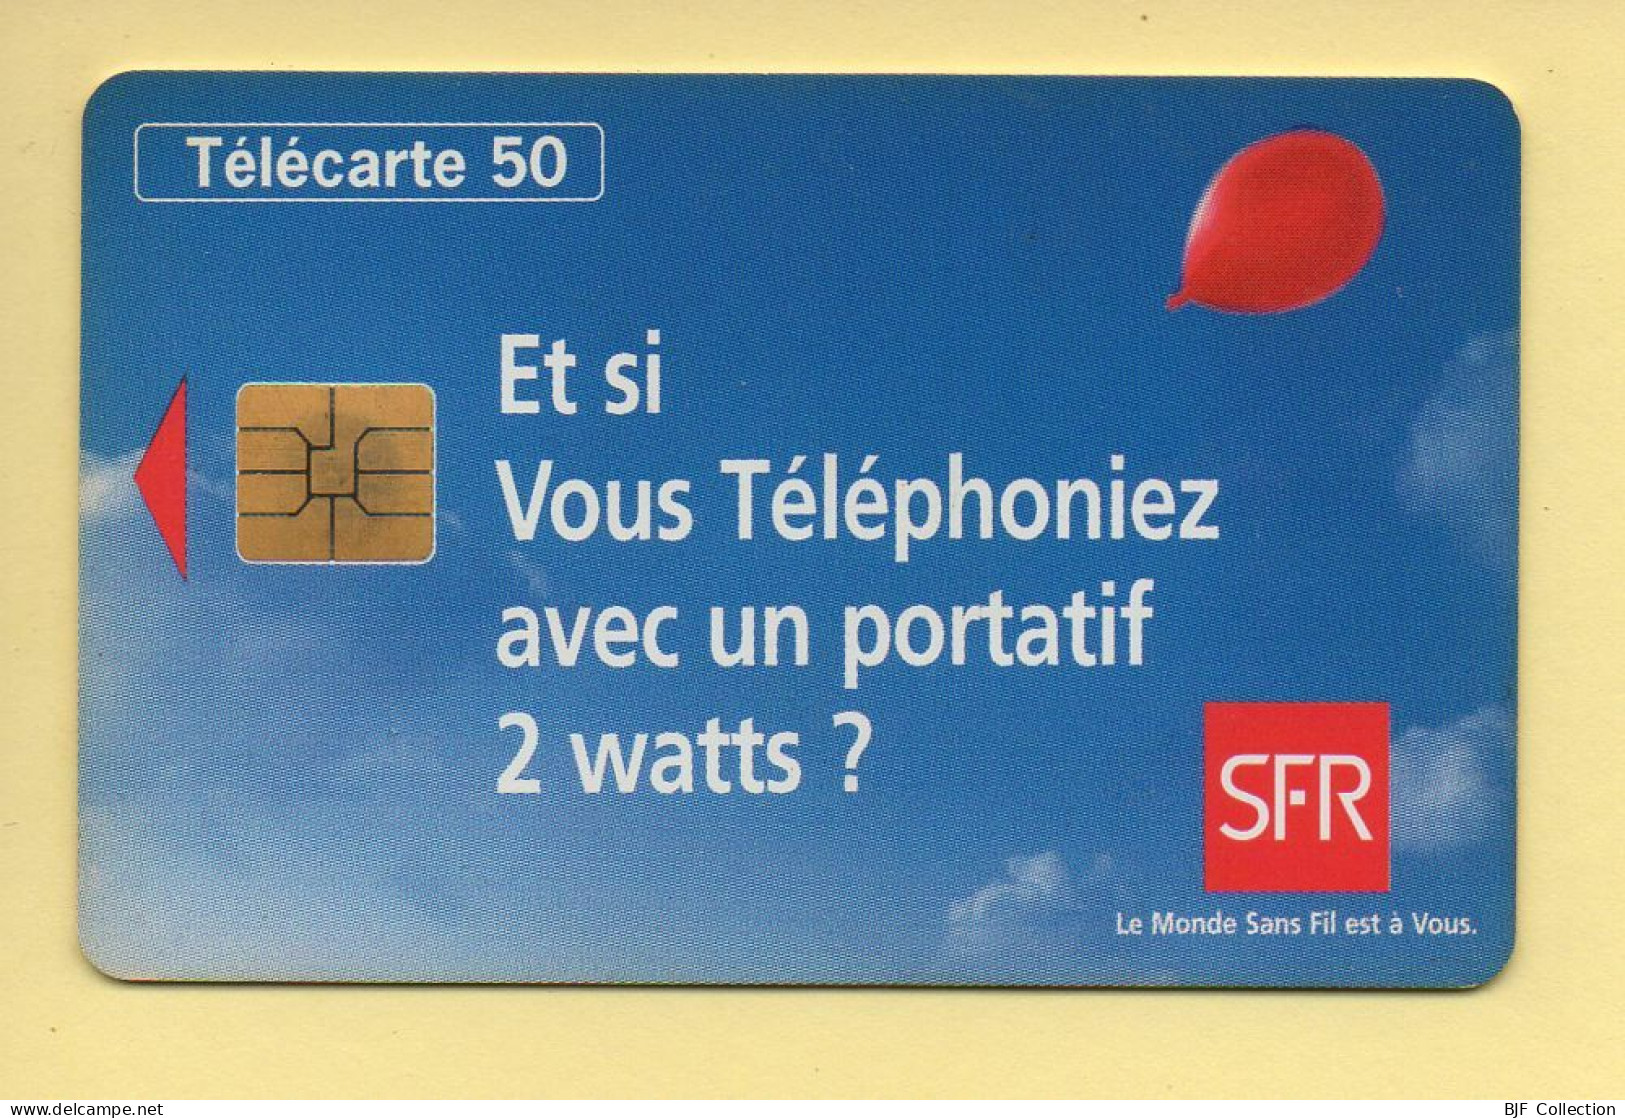 Télécarte 1995 : SFR 2 / 50 Unités / N° A 59017191/579331278 / 09-95 (voir Puce Et Numéro Au Dos) - 1995